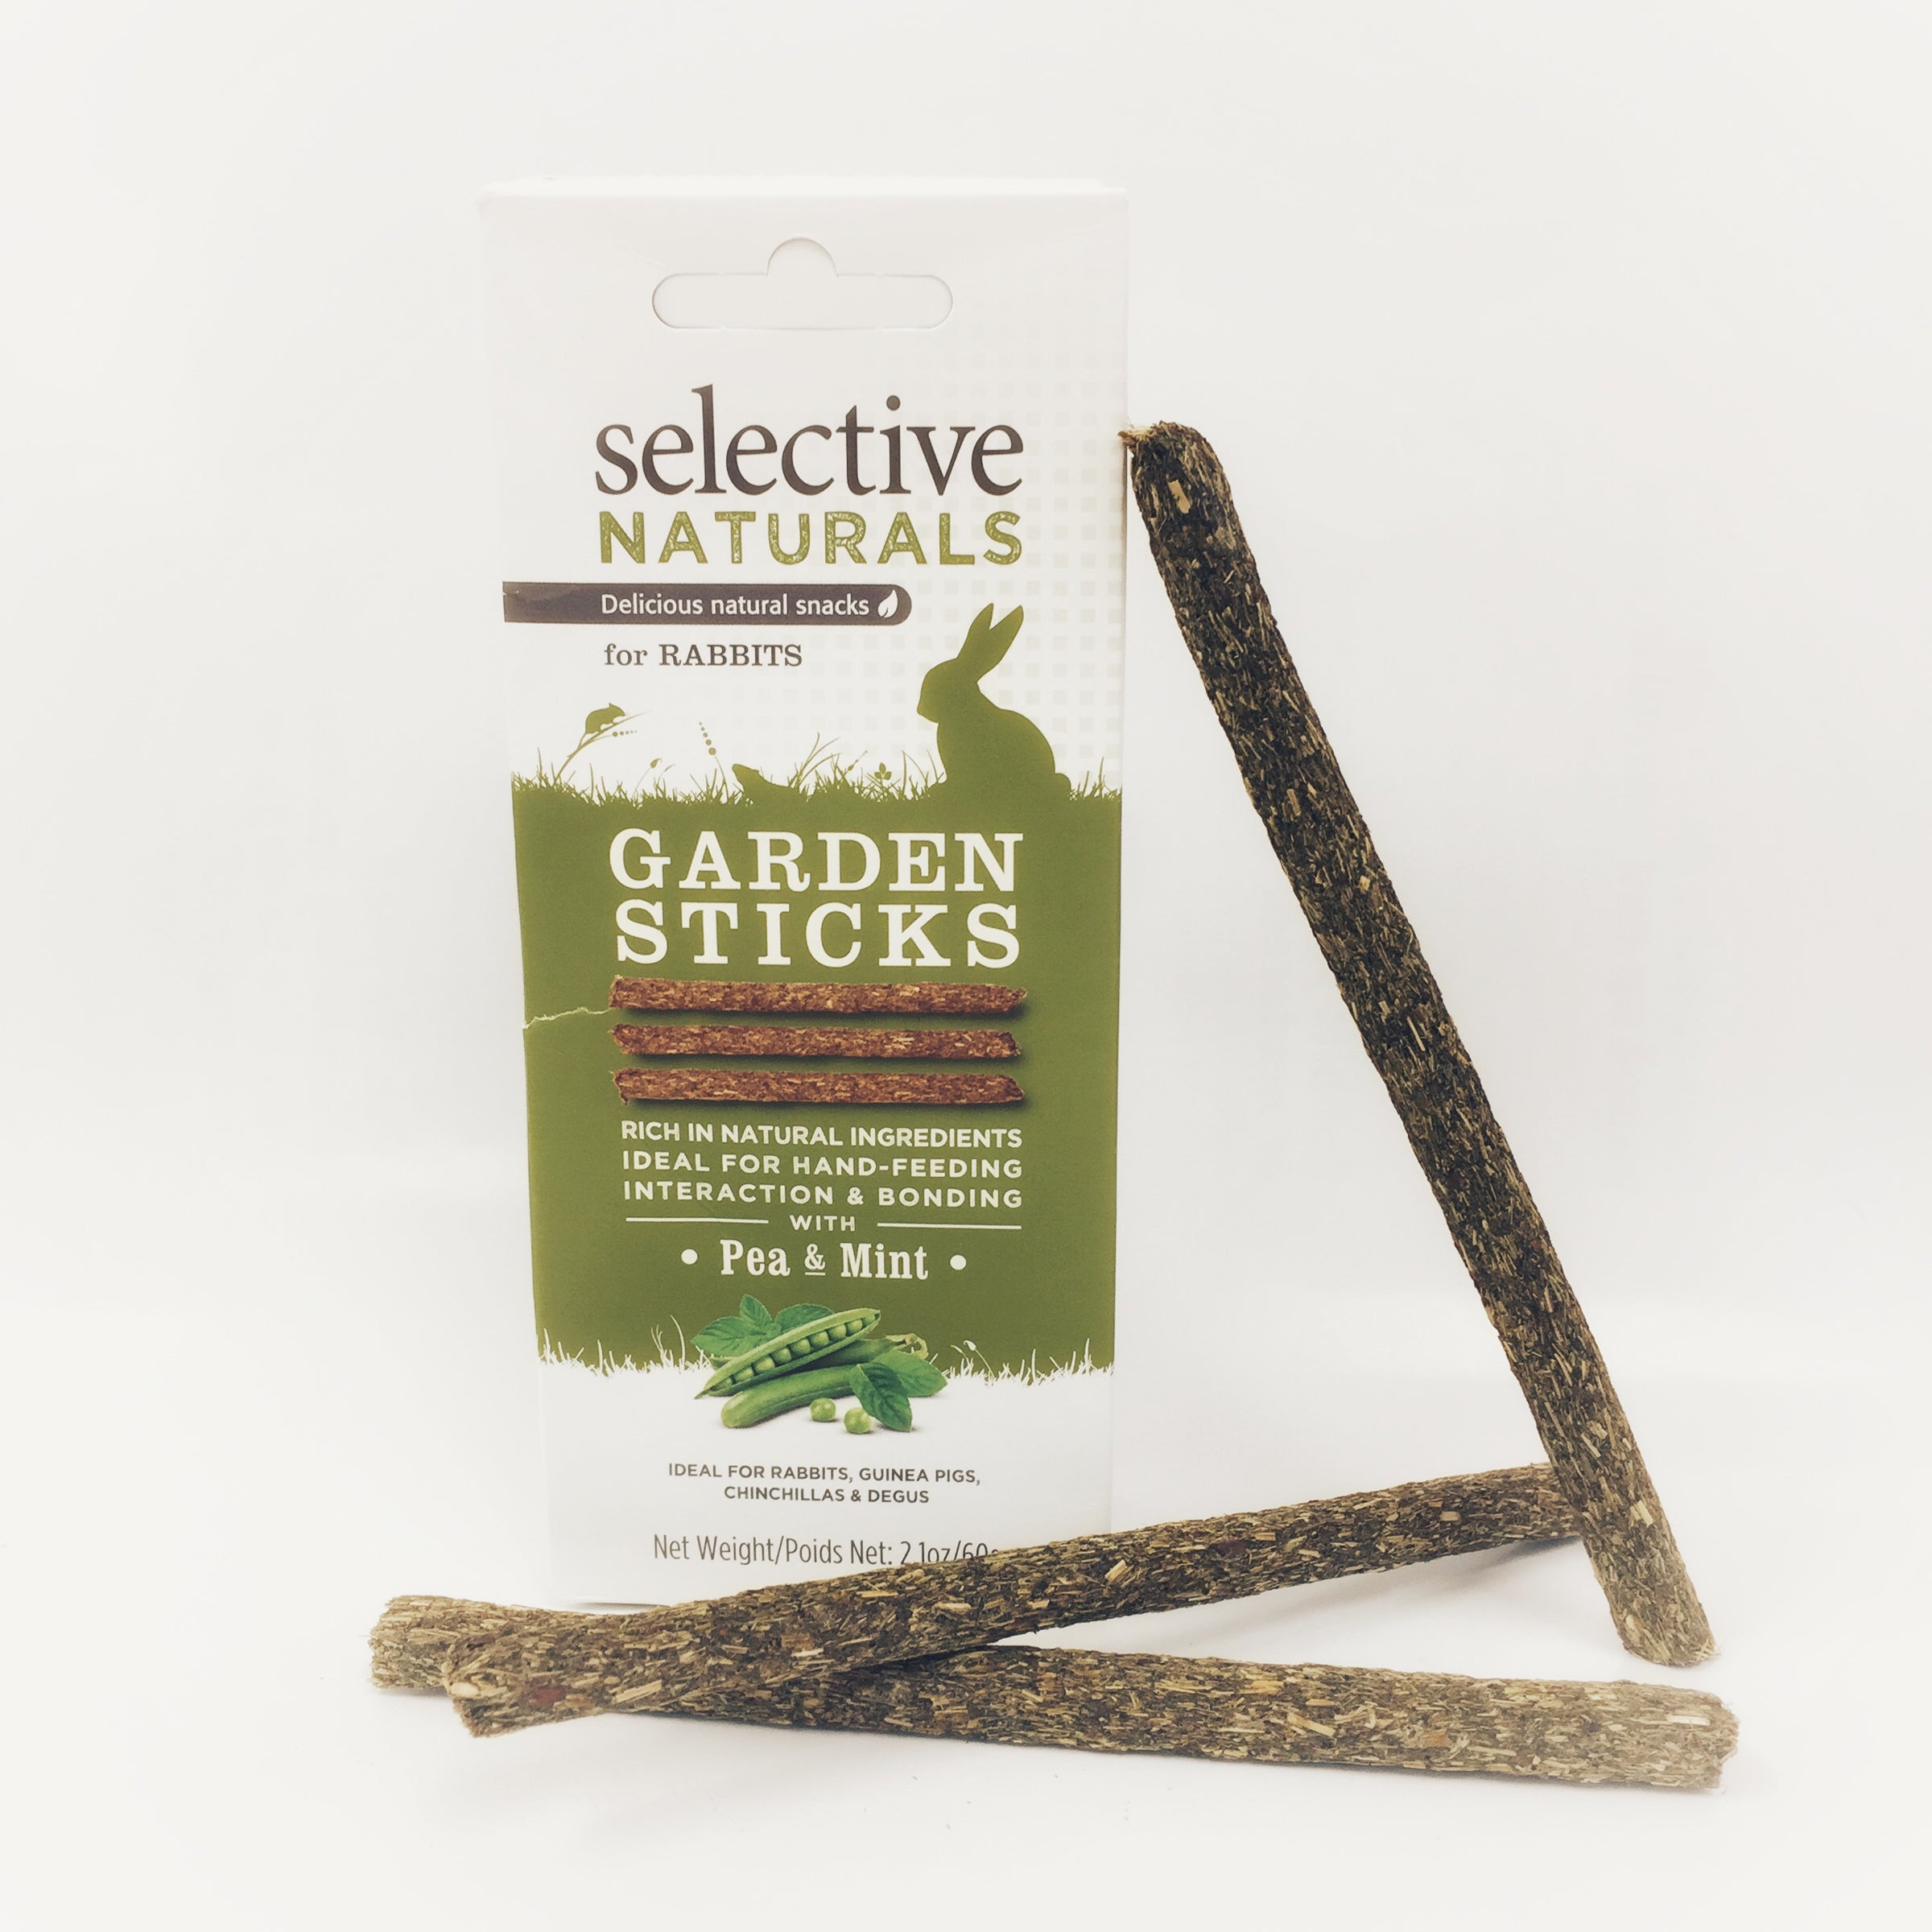 Supreme 2.1 oz Selective Naturals Garden Sticks